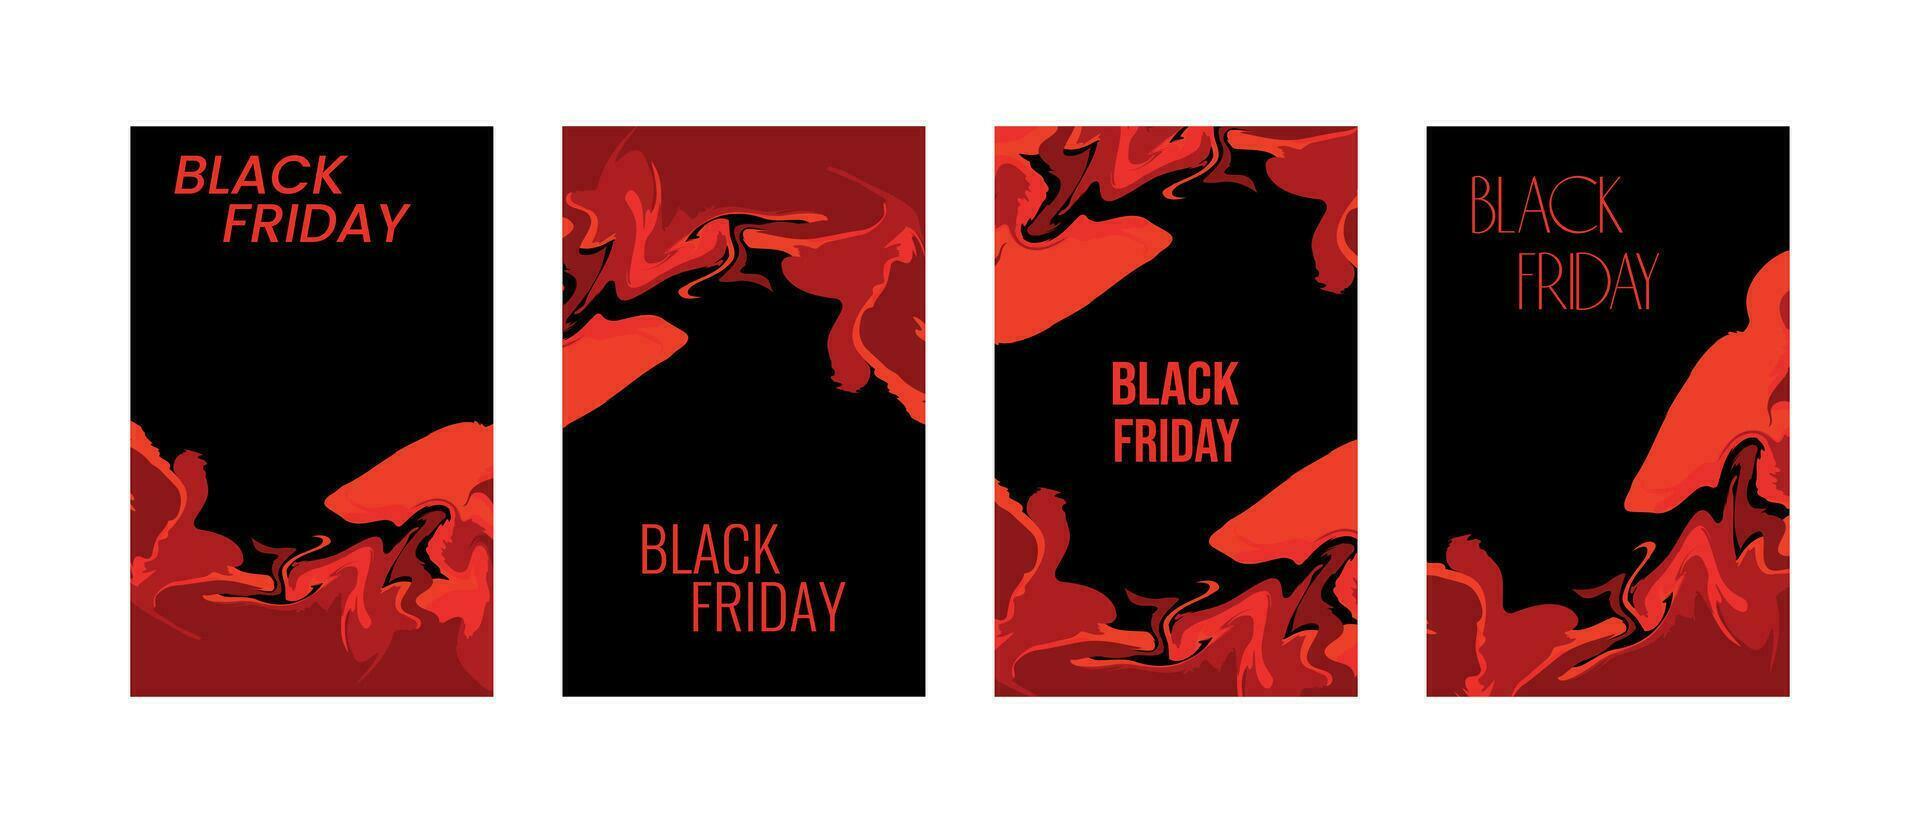 schwarz Freitag Verkauf Werbung Flyer oder Abdeckungen zum schwarz Freitag Einkaufen, Geschäft, handeln, Beförderung und Werbung. vektor